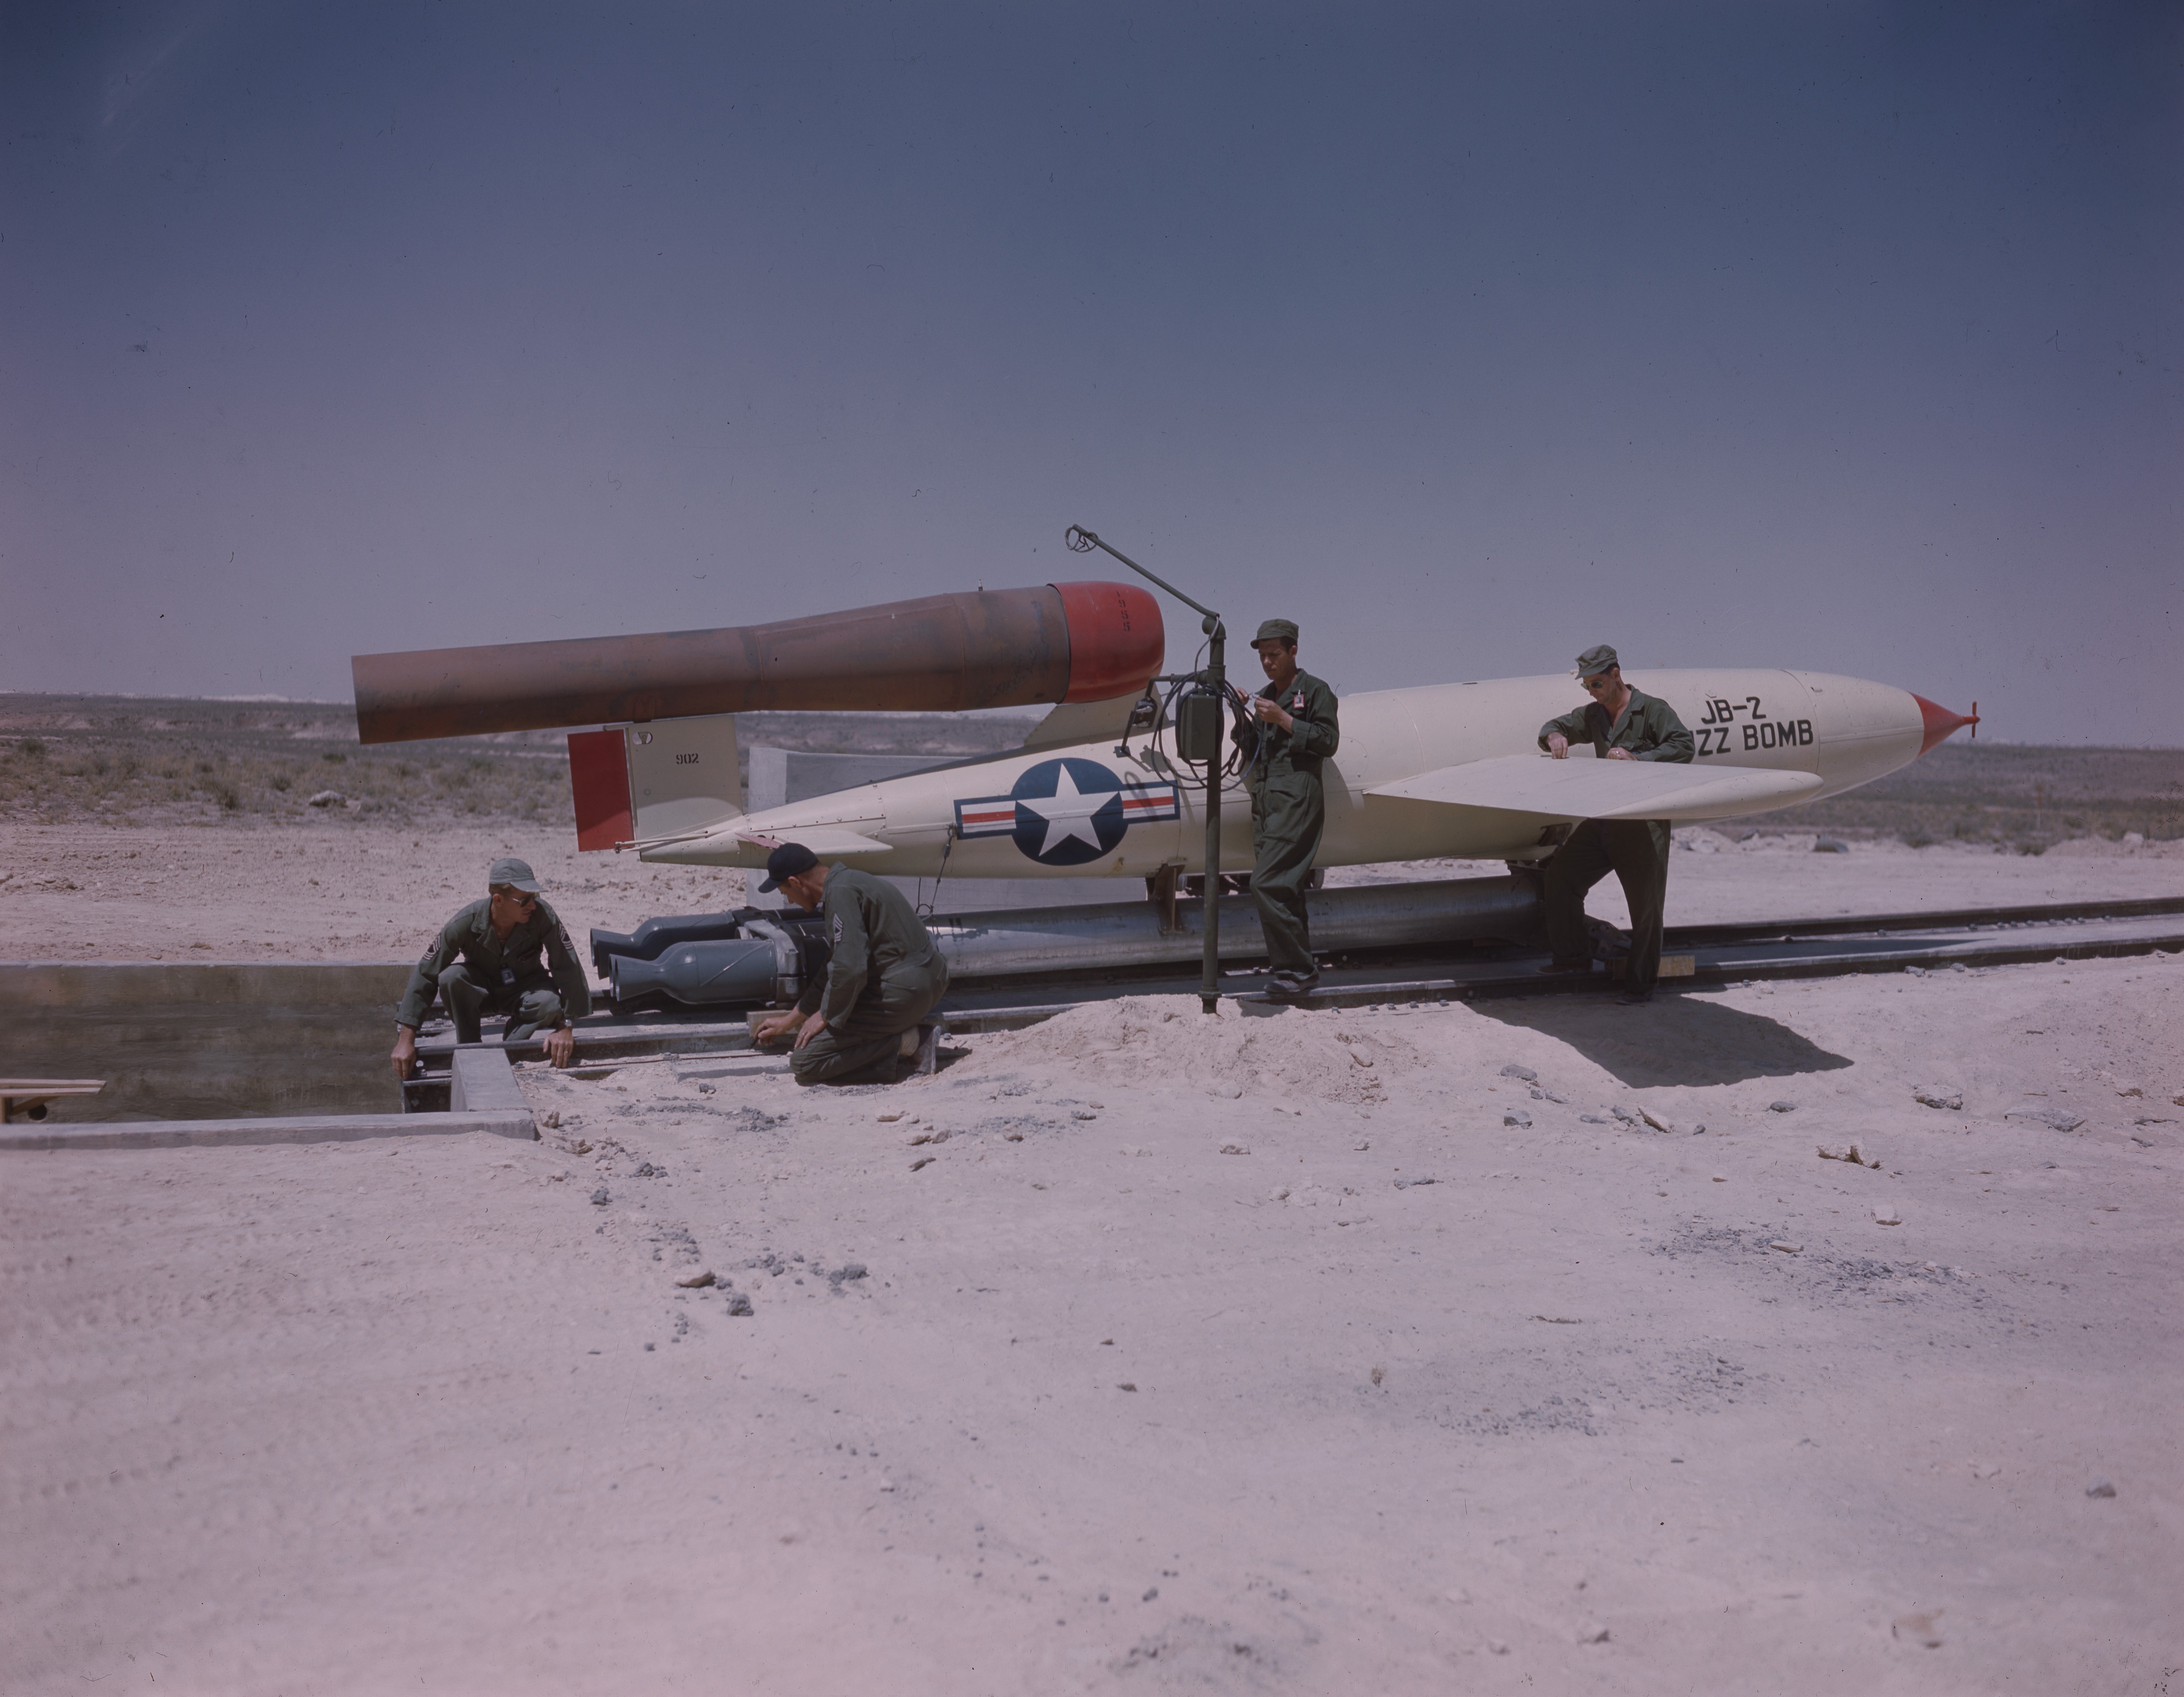 File:JB-2 Buzz Bomb Holloman AFB 342-C-K-004899.jpg - Wikipedia